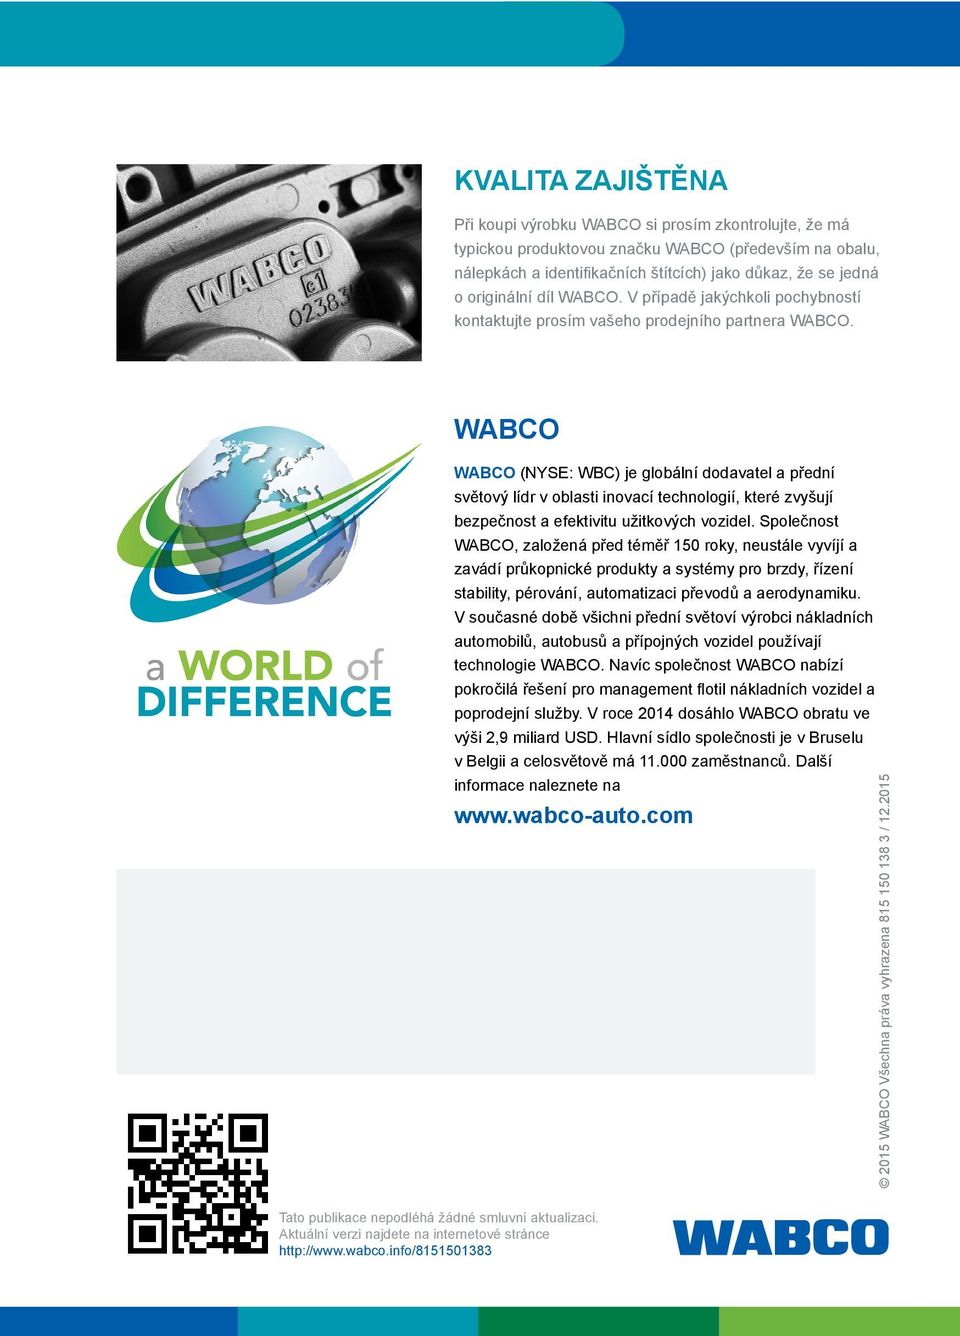 WABCO WABCO (NYSE: WBC) je globální dodavatel a přední světový lídr v oblasti inovací technologií, které zvyšují bezpečnost a efektivitu užitkových vozidel.